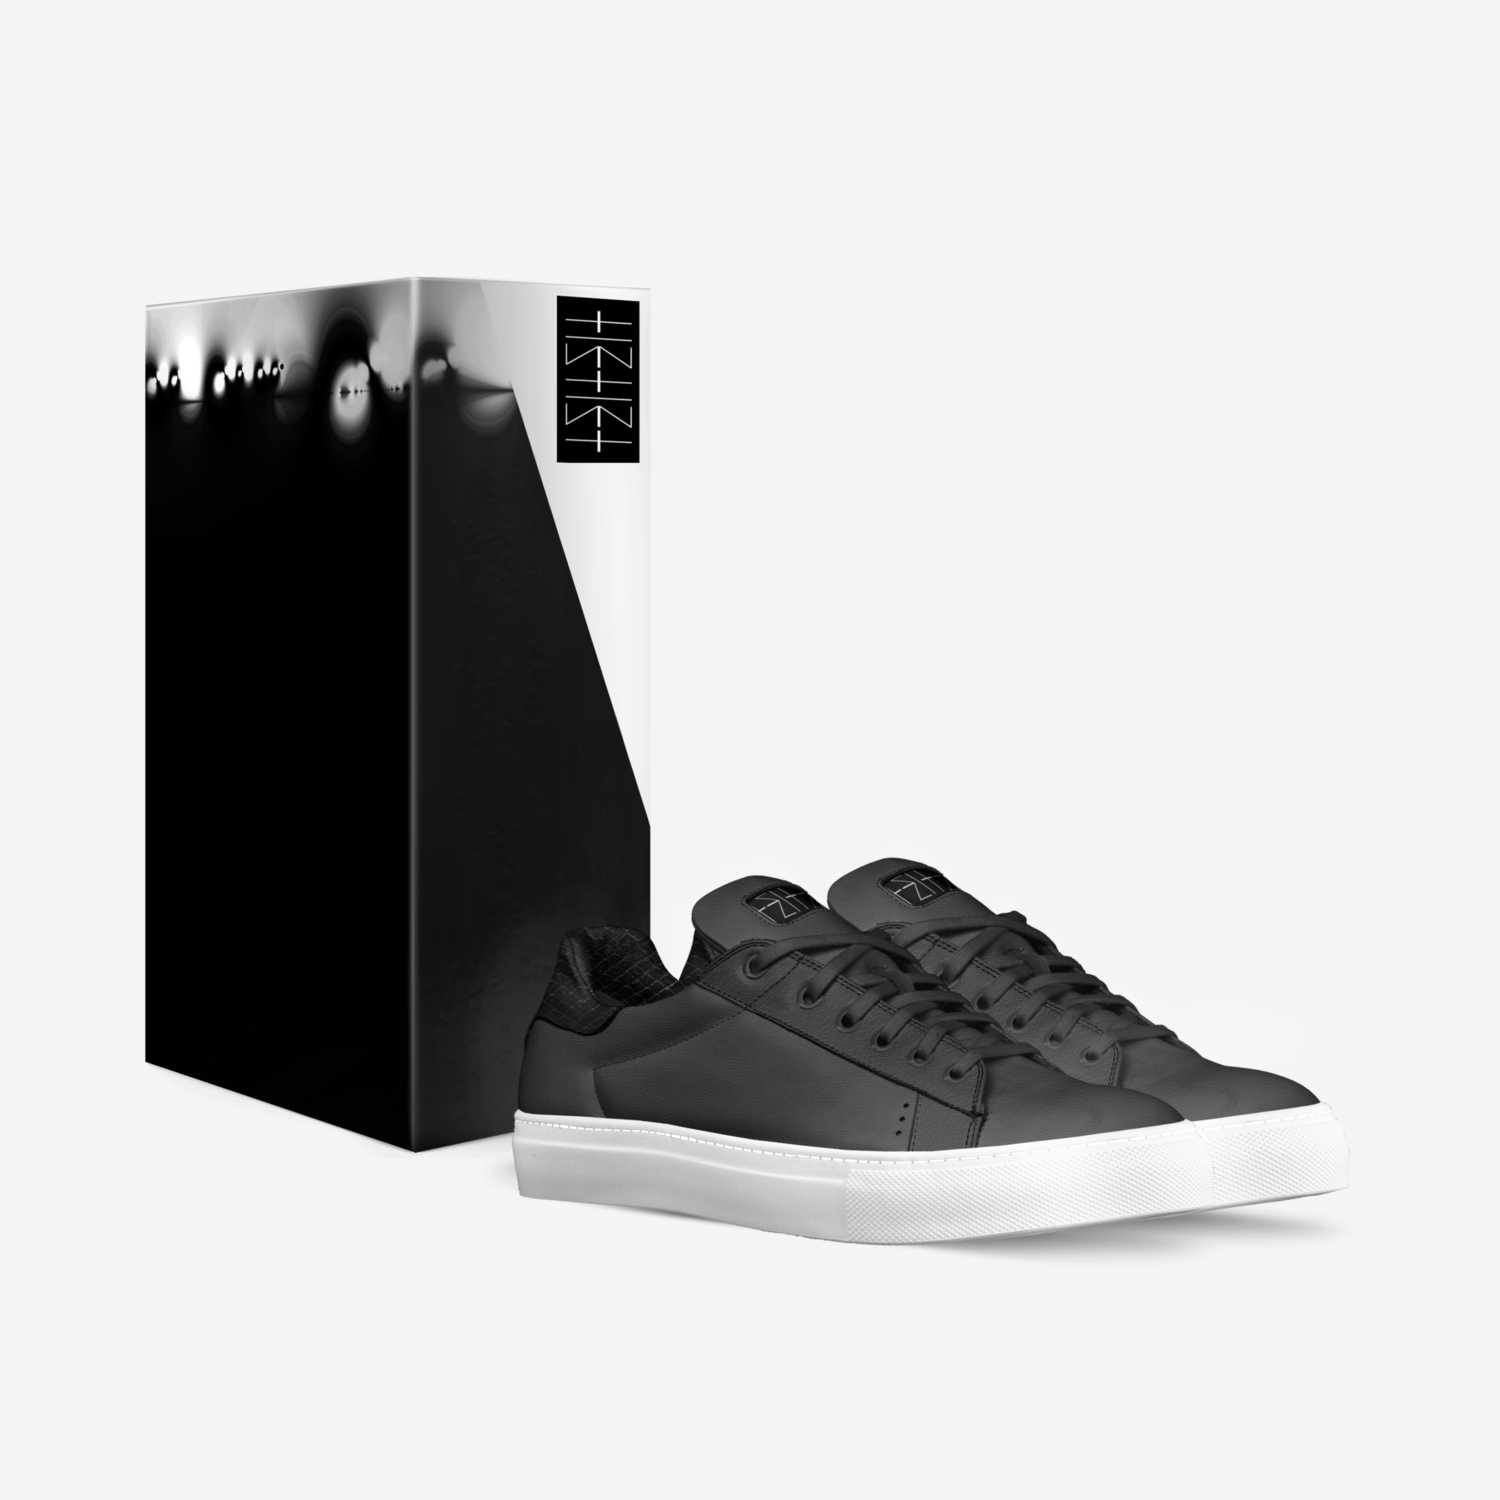 MAL'AKH THREE custom made in Italy shoes by Ricardo Yoreh Ladino | Box view